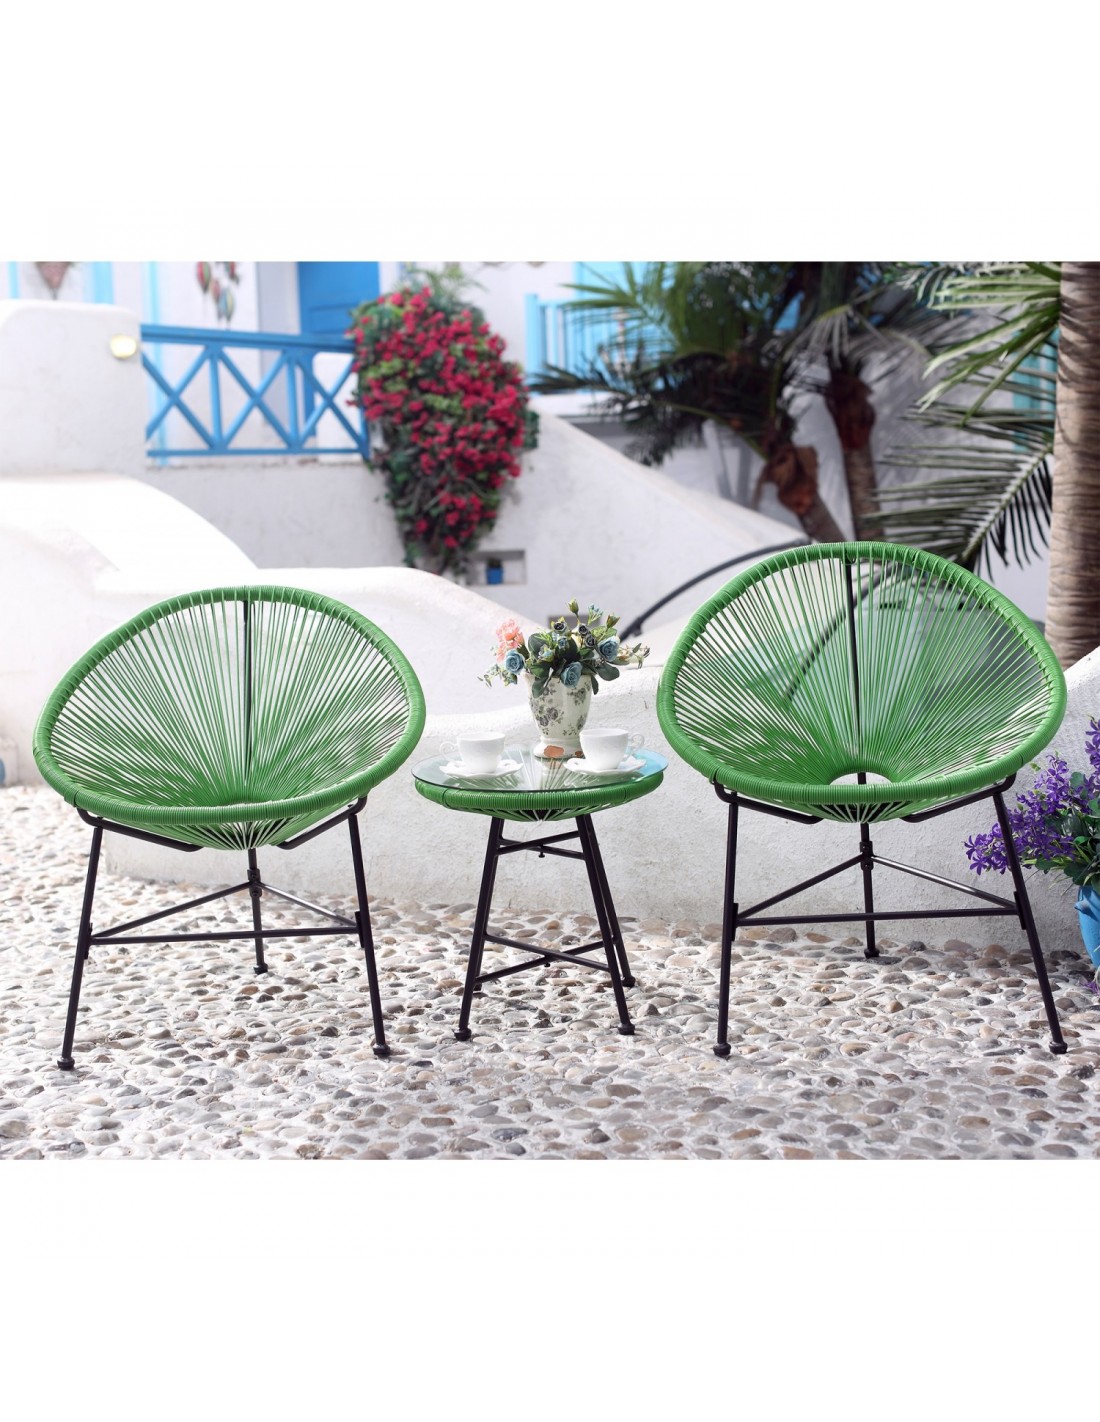 Ensemble de jardin Acapulco composé d'une petite table et de 2 fauteuils  en forme d'œuf